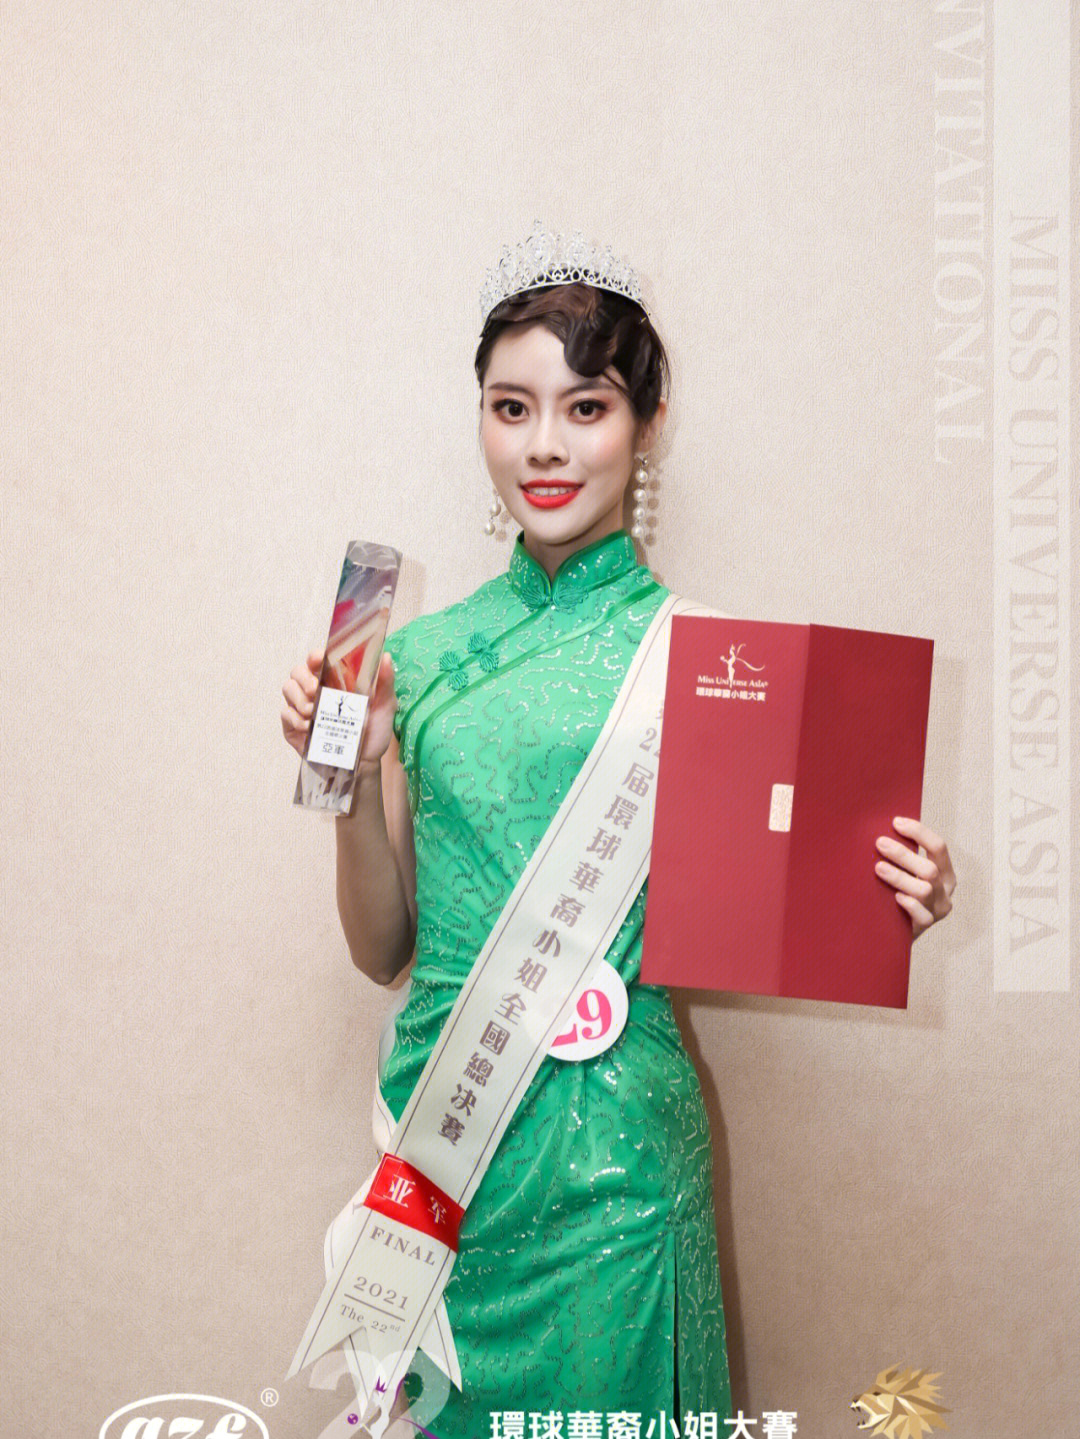 22届环球华裔小姐大赛全国总决赛亚军